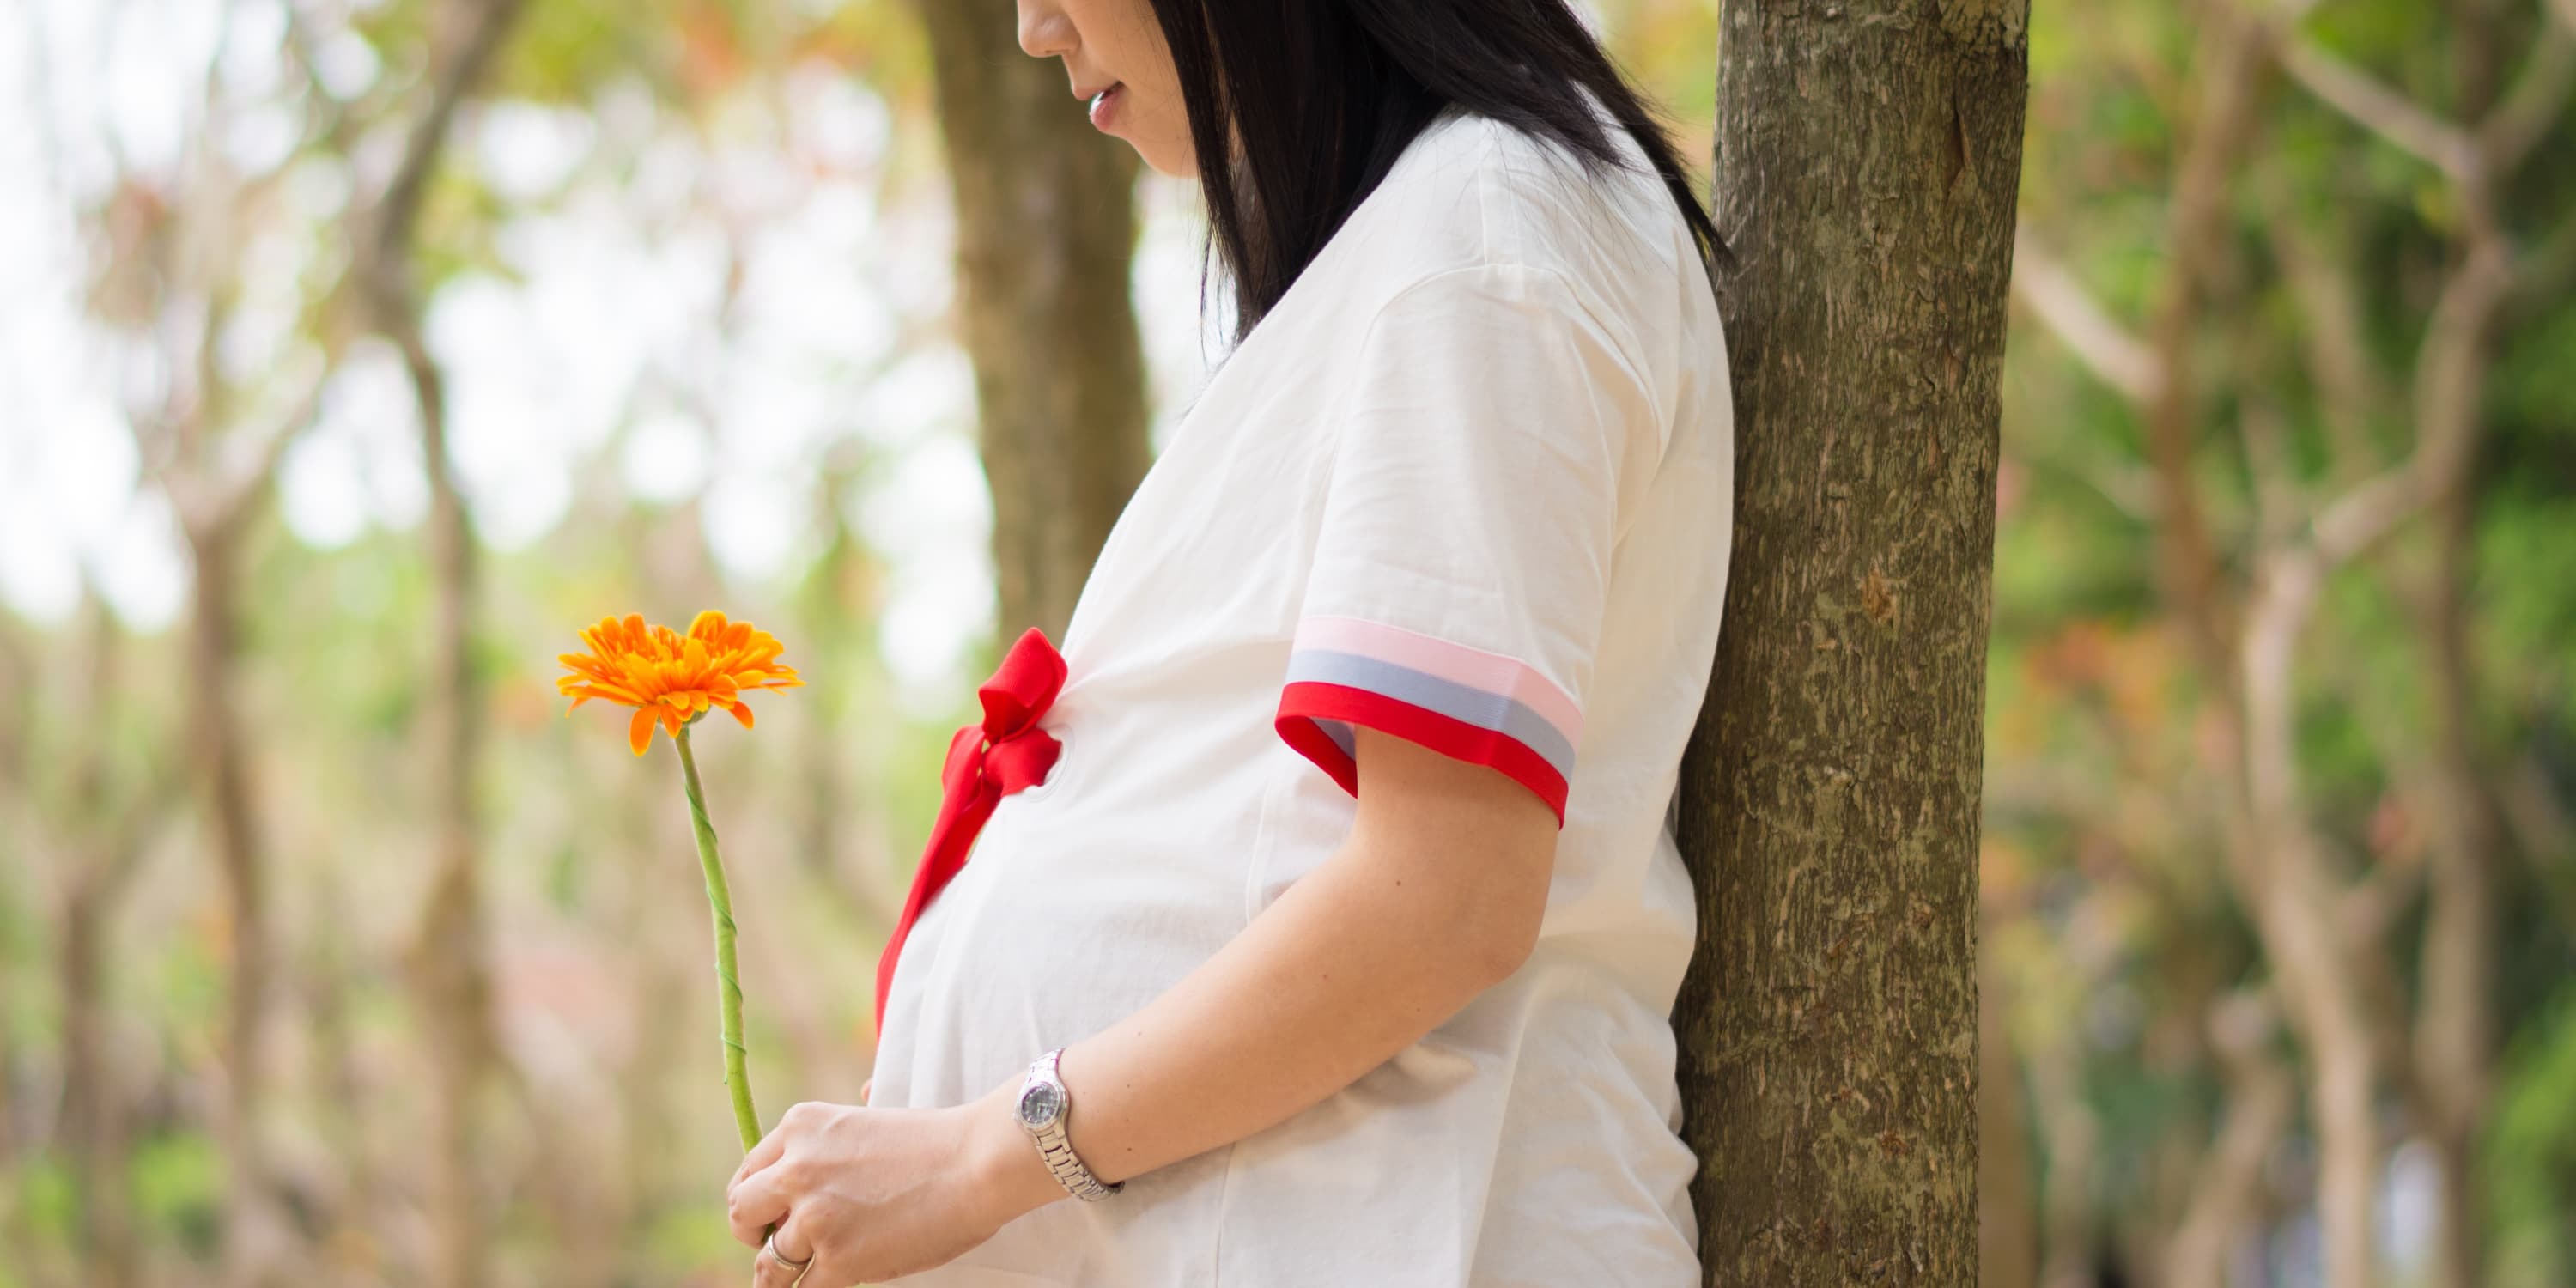 Vista lateral: uma mulher grávida encontra-se debaixo de uma árvore e segura uma flor nas mãos